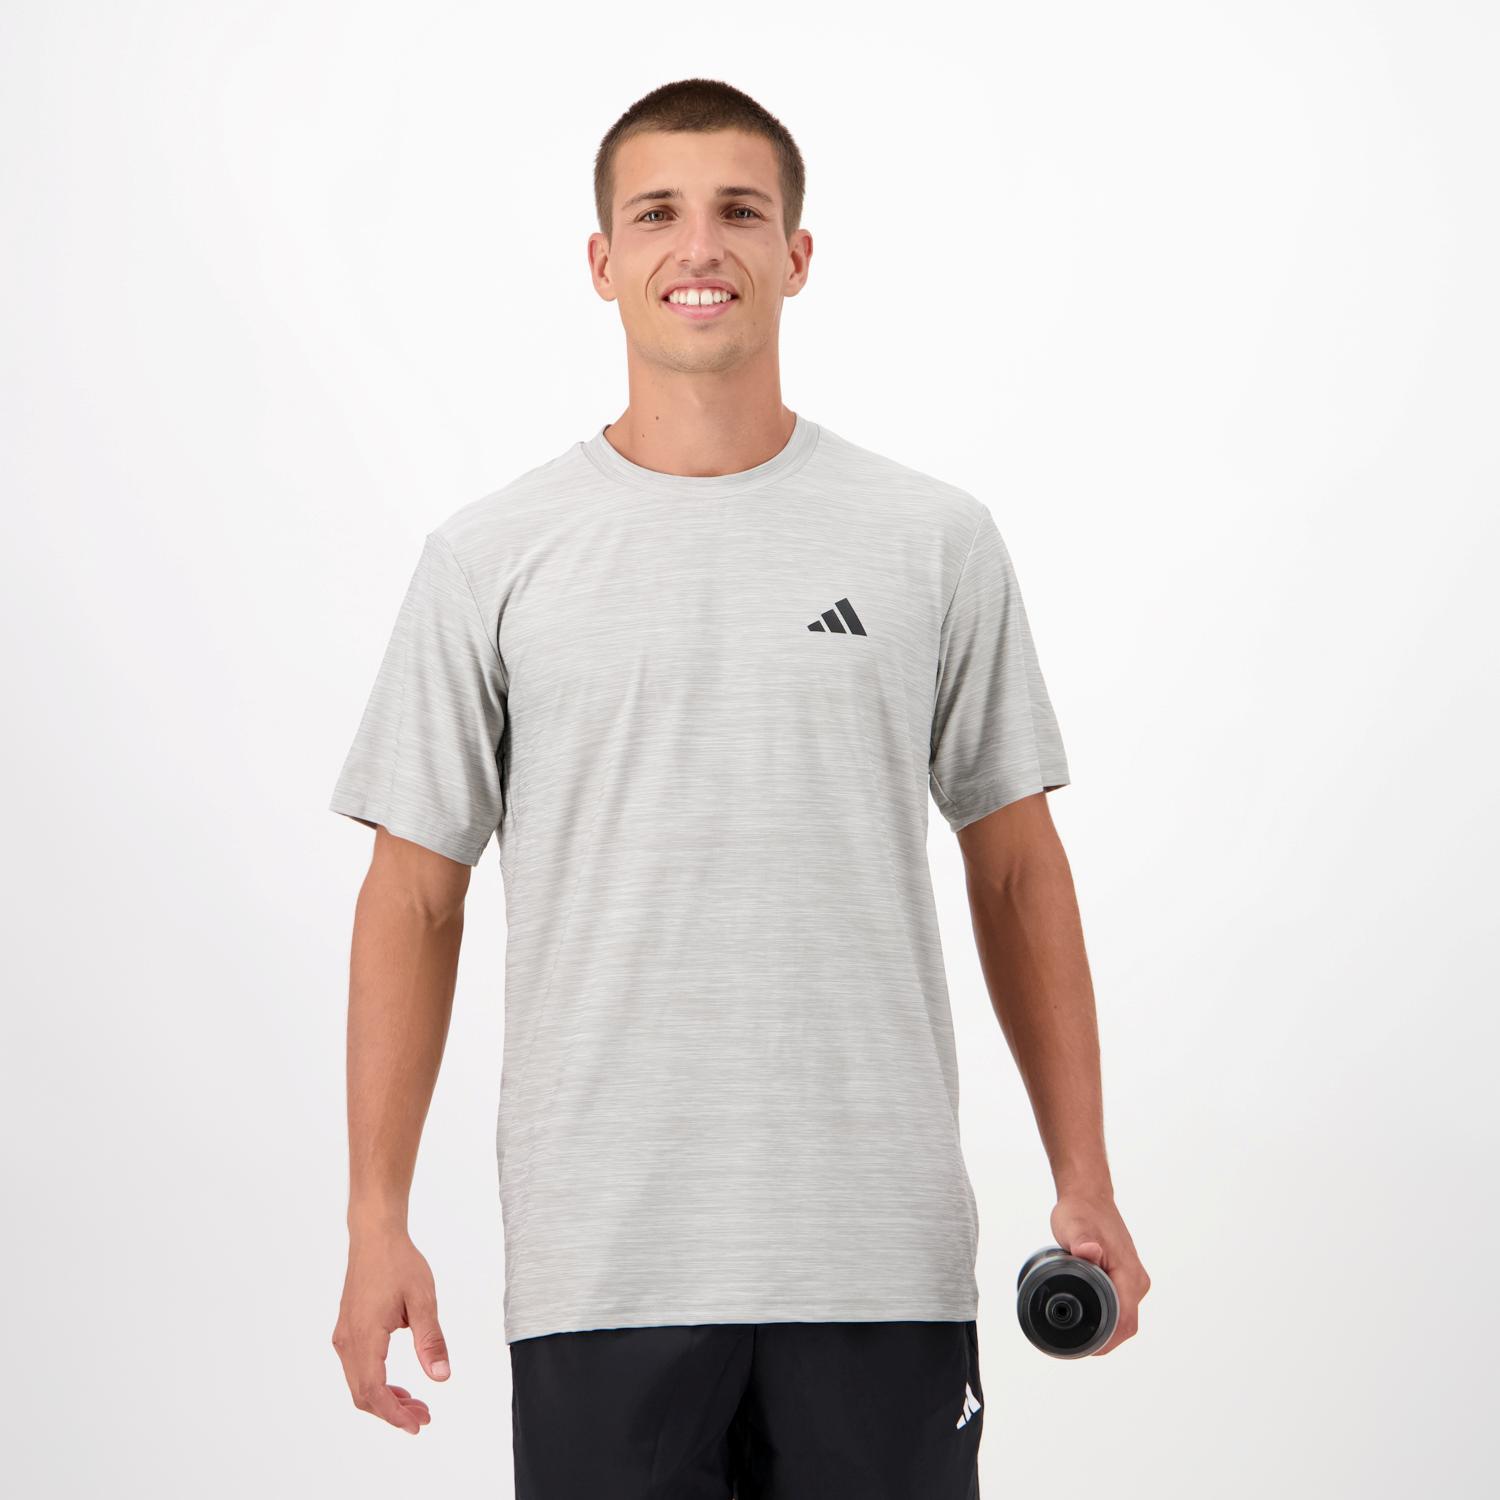 Camiseta Tenis adidas - - Camiseta Hombre, Sprinter